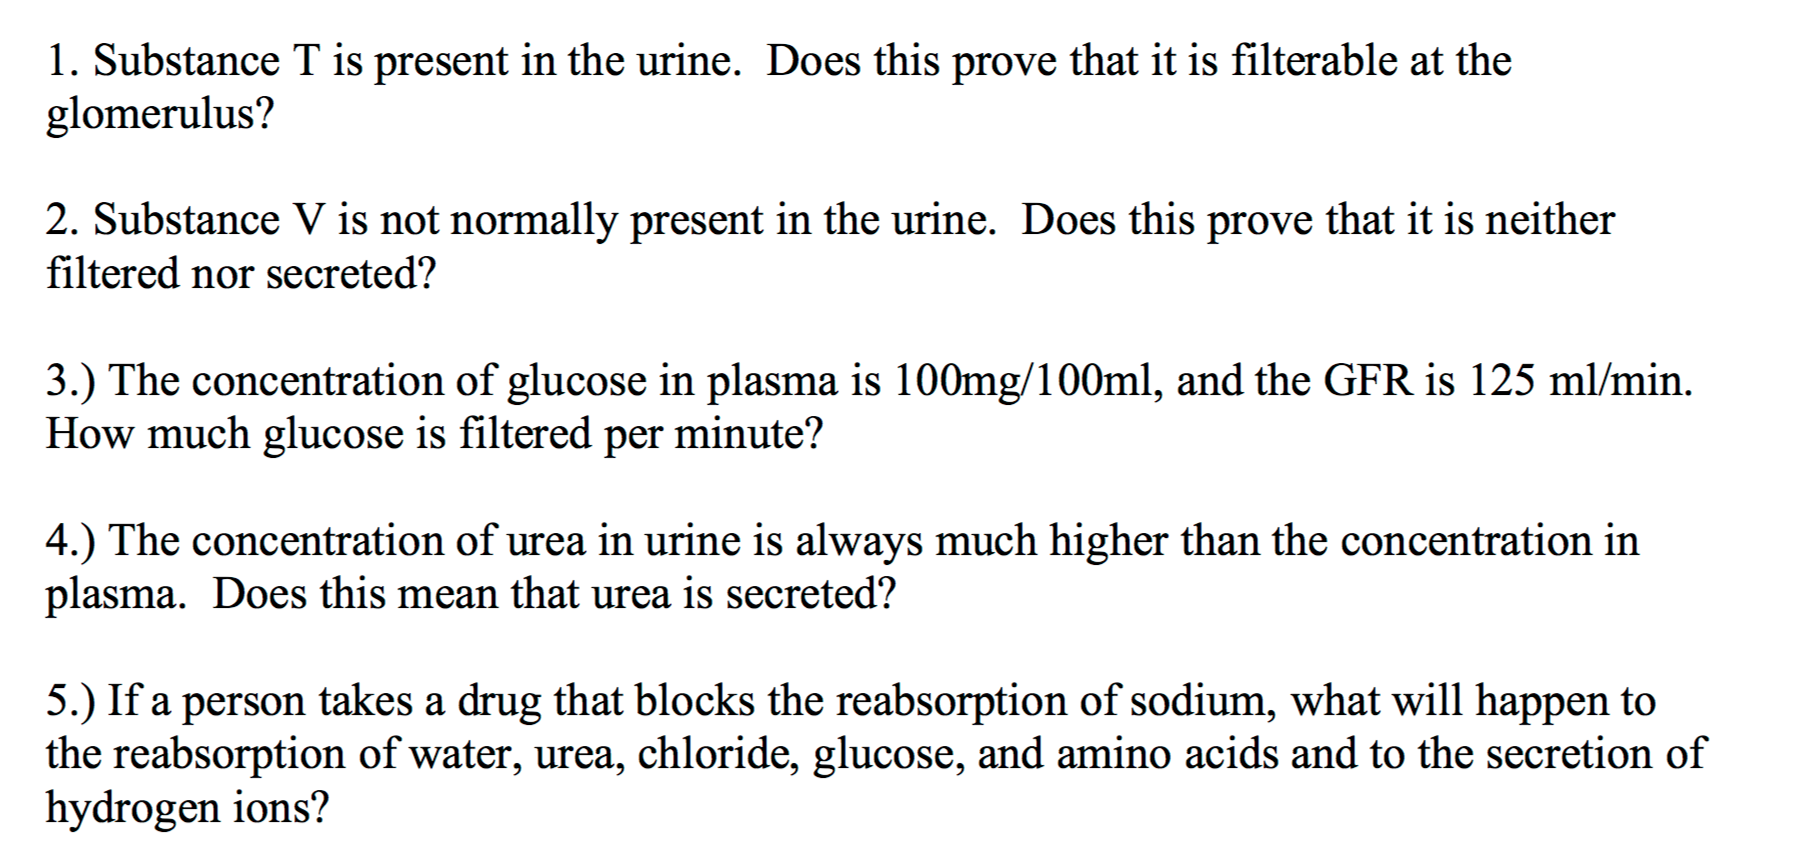 pourquoi le glucose et les acides aminés n'ont-ils pas été trouvés dans la dernière urine